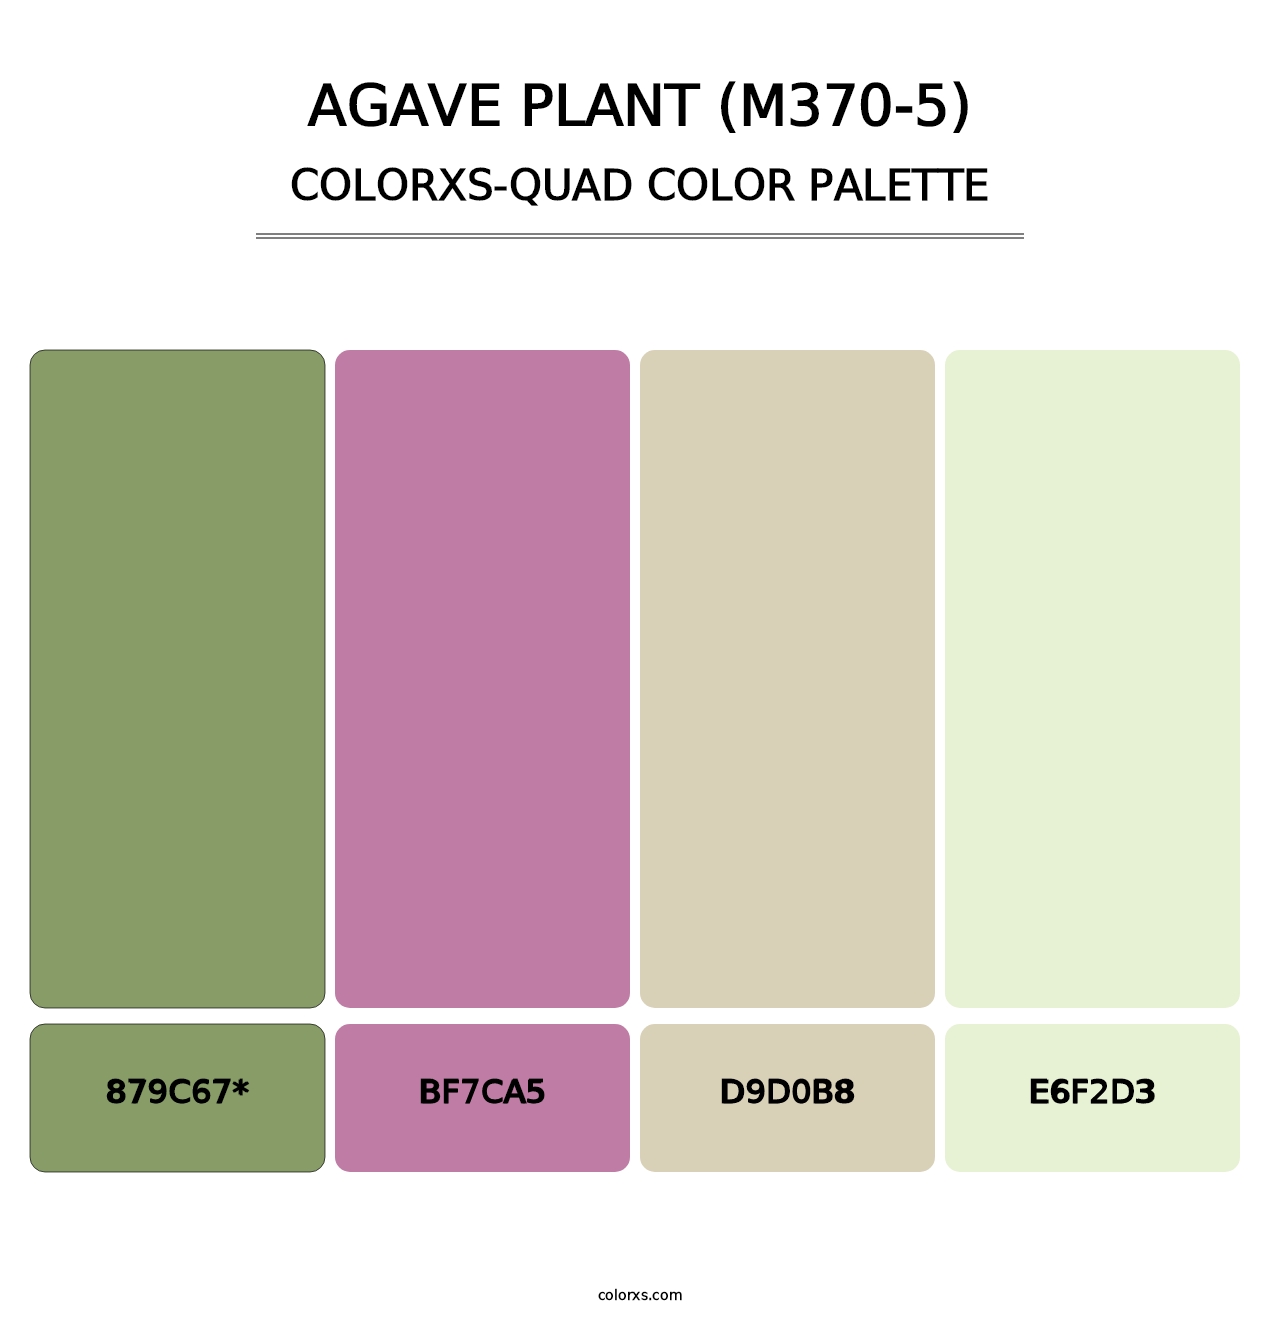 Agave Plant (M370-5) - Colorxs Quad Palette